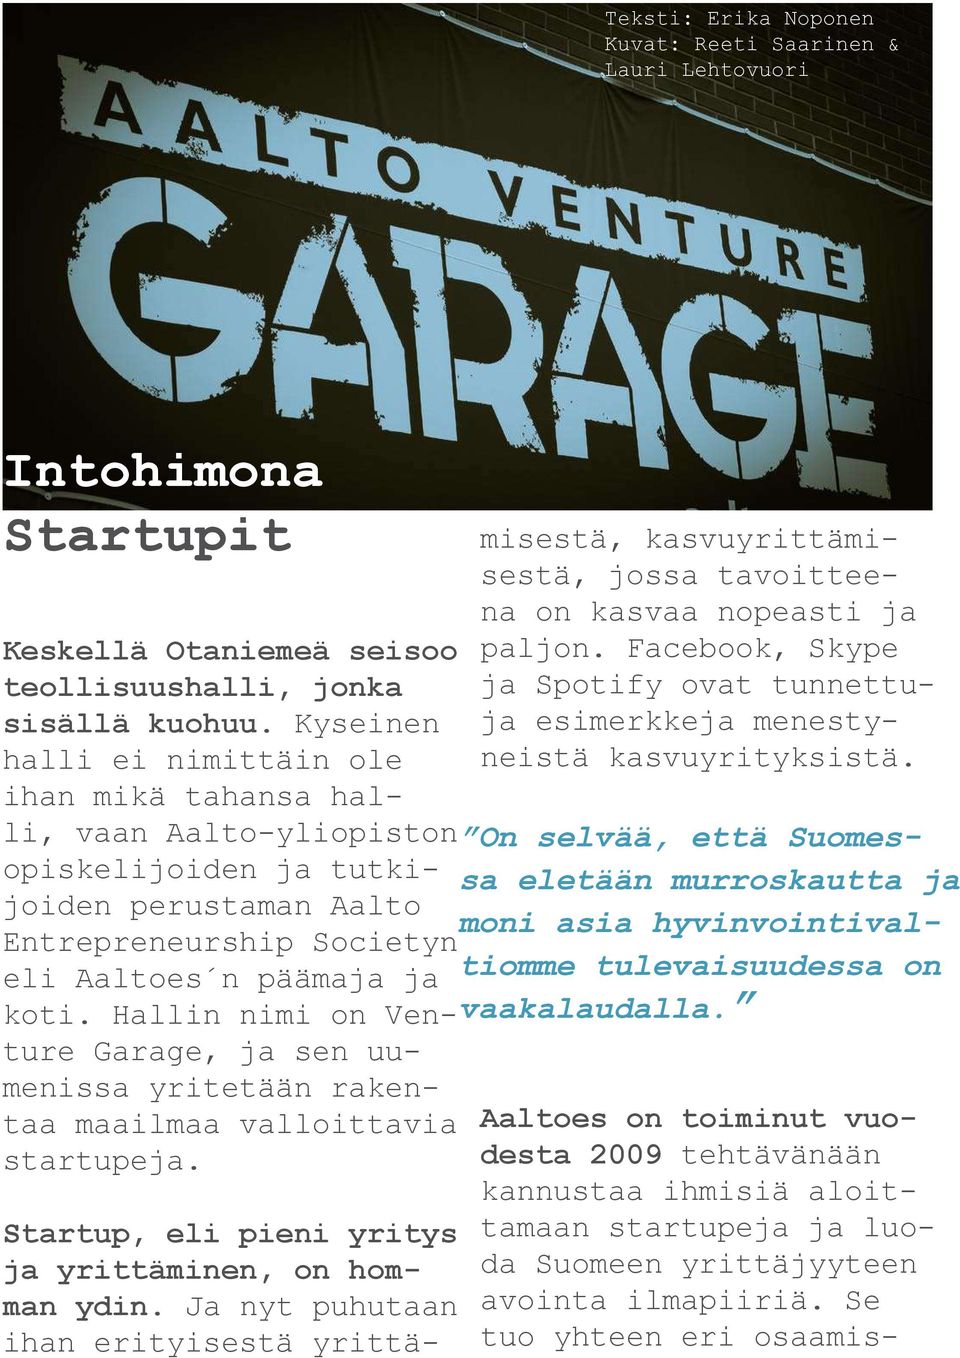 Hallin nimi on Venture Garage, ja sen uumenissa yritetään rakentaa maailmaa valloittavia startupeja. Startup, eli pieni yritys ja yrittäminen, on homman ydin.